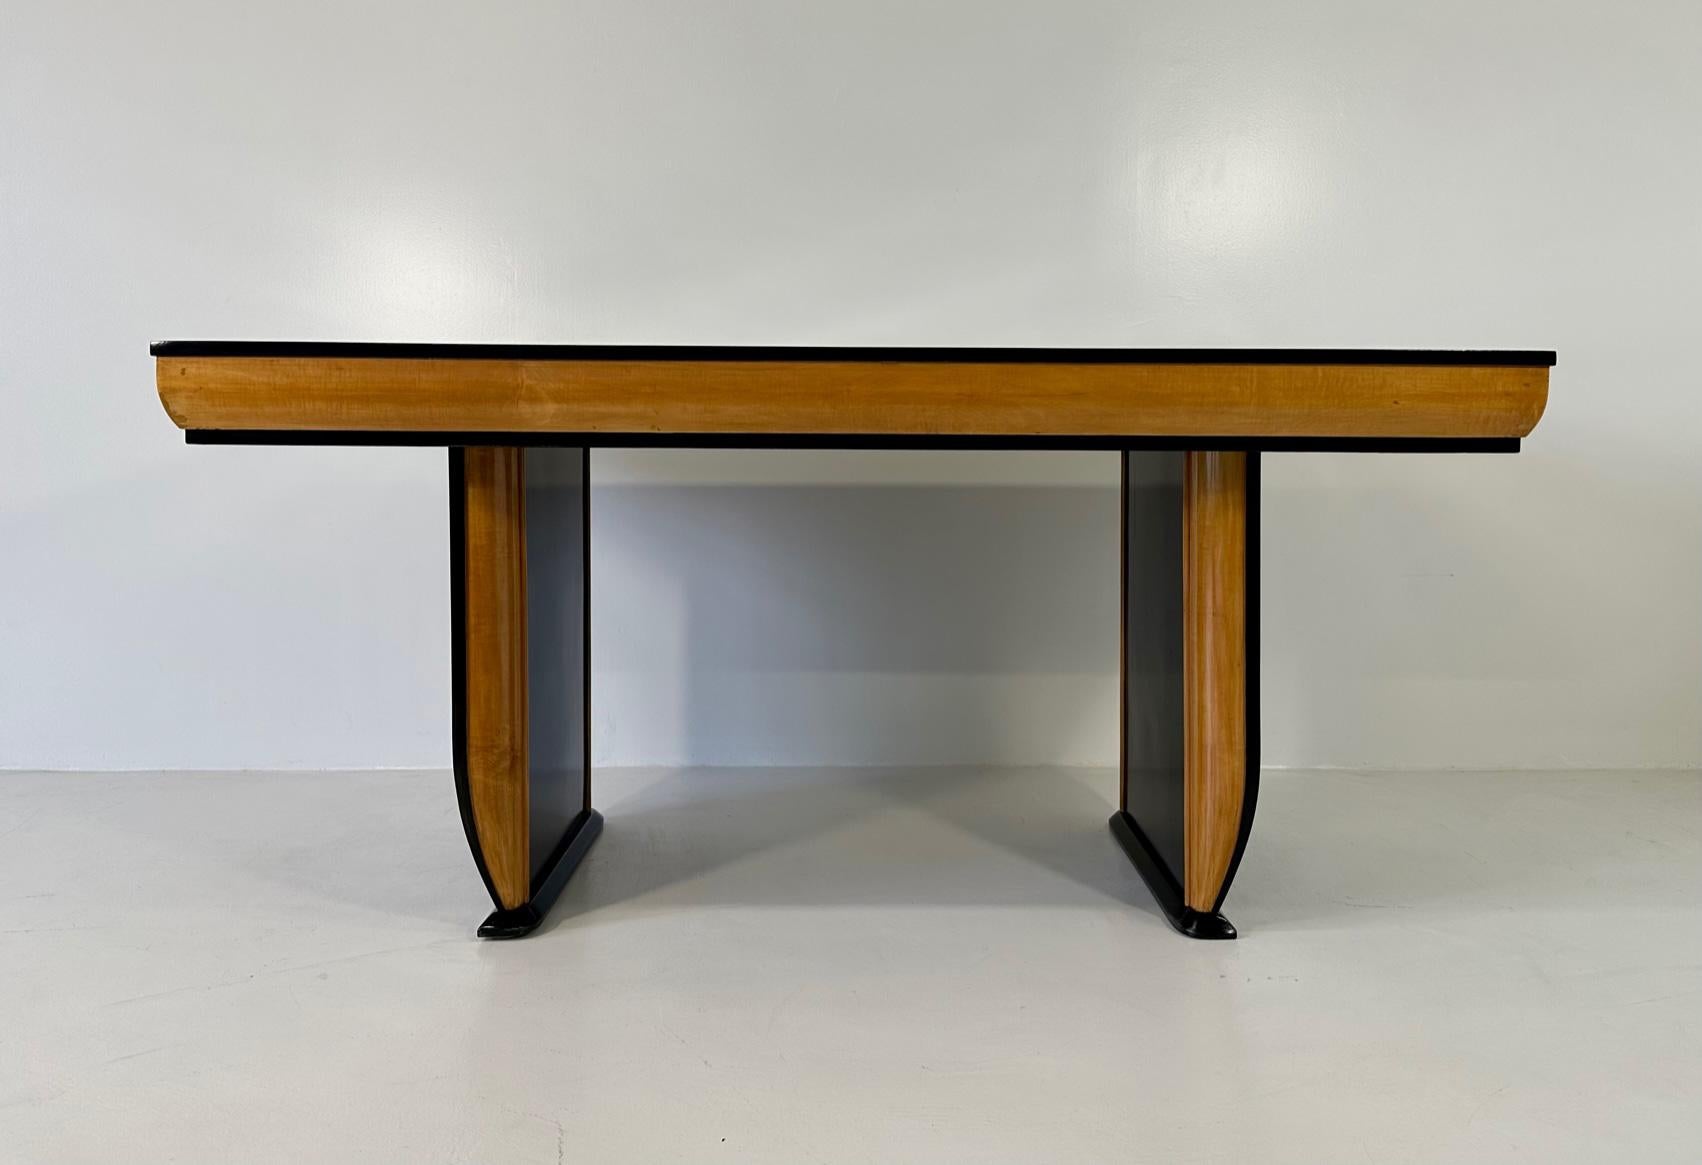 Dieser schöne Tisch wurde in den 1940er Jahren in Italien hergestellt und ist auf die  dem berühmten italienischen Designer Osvaldo Borsani. 
Die Platte, die Profile und die Beine sind schwarz lackiert, während die Profile der Platte und der Beine